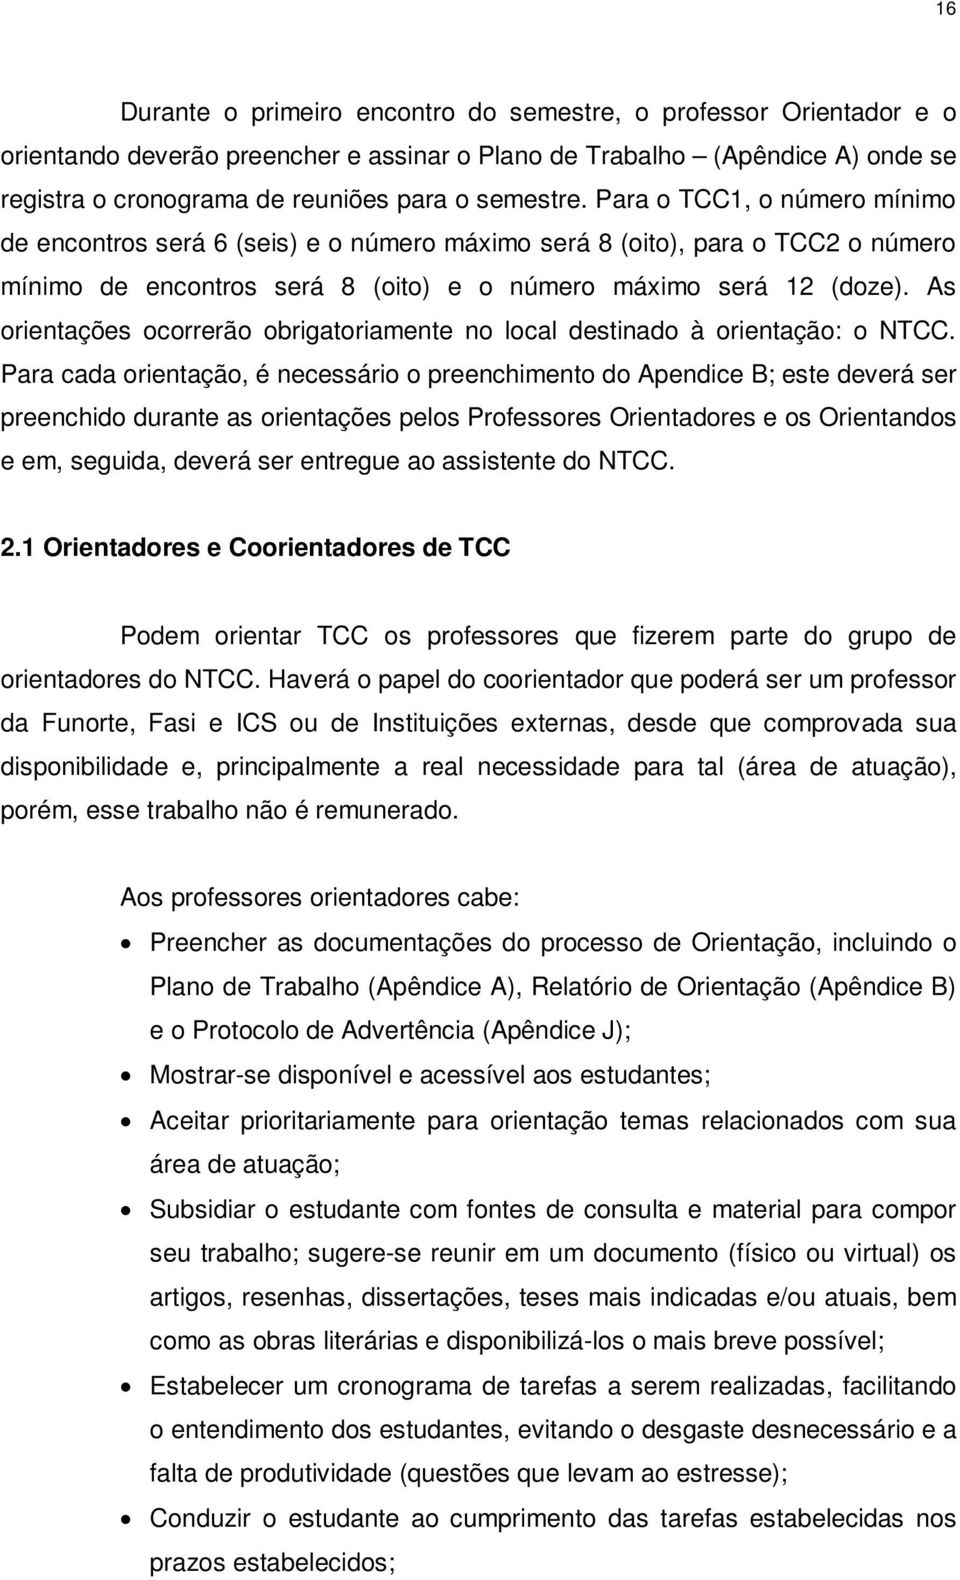 As orientações ocorrerão obrigatoriamente no local destinado à orientação: o NTCC.